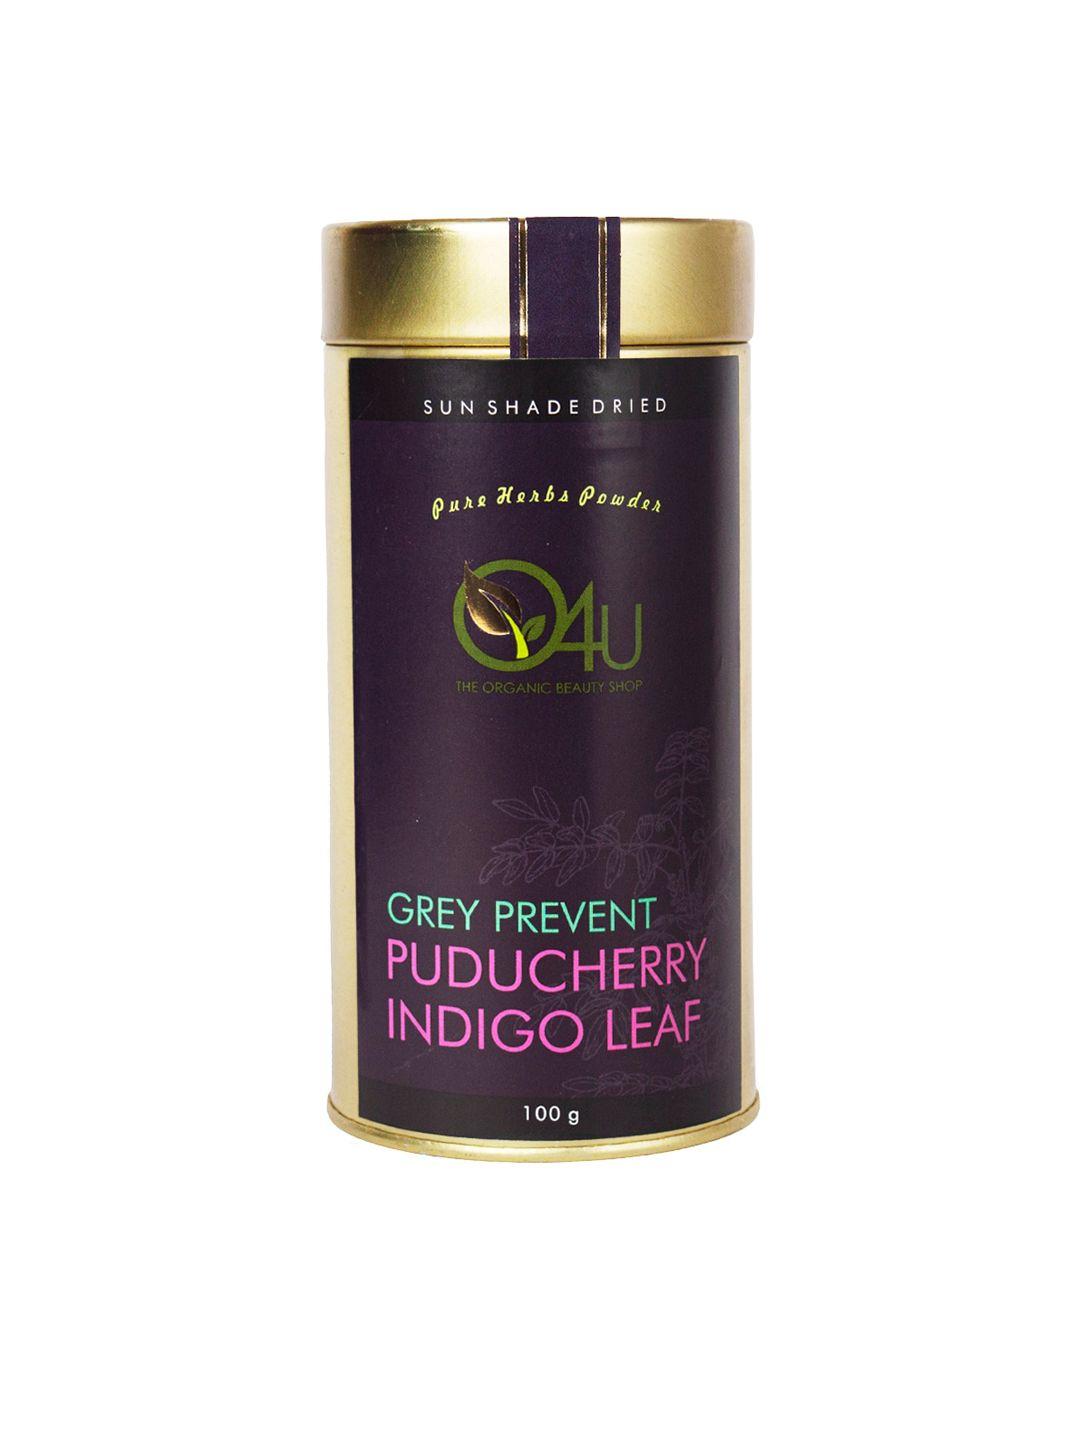 o4u sun shade dried grey prevent puducherry indigo leaf powder for dandruff control - 100g